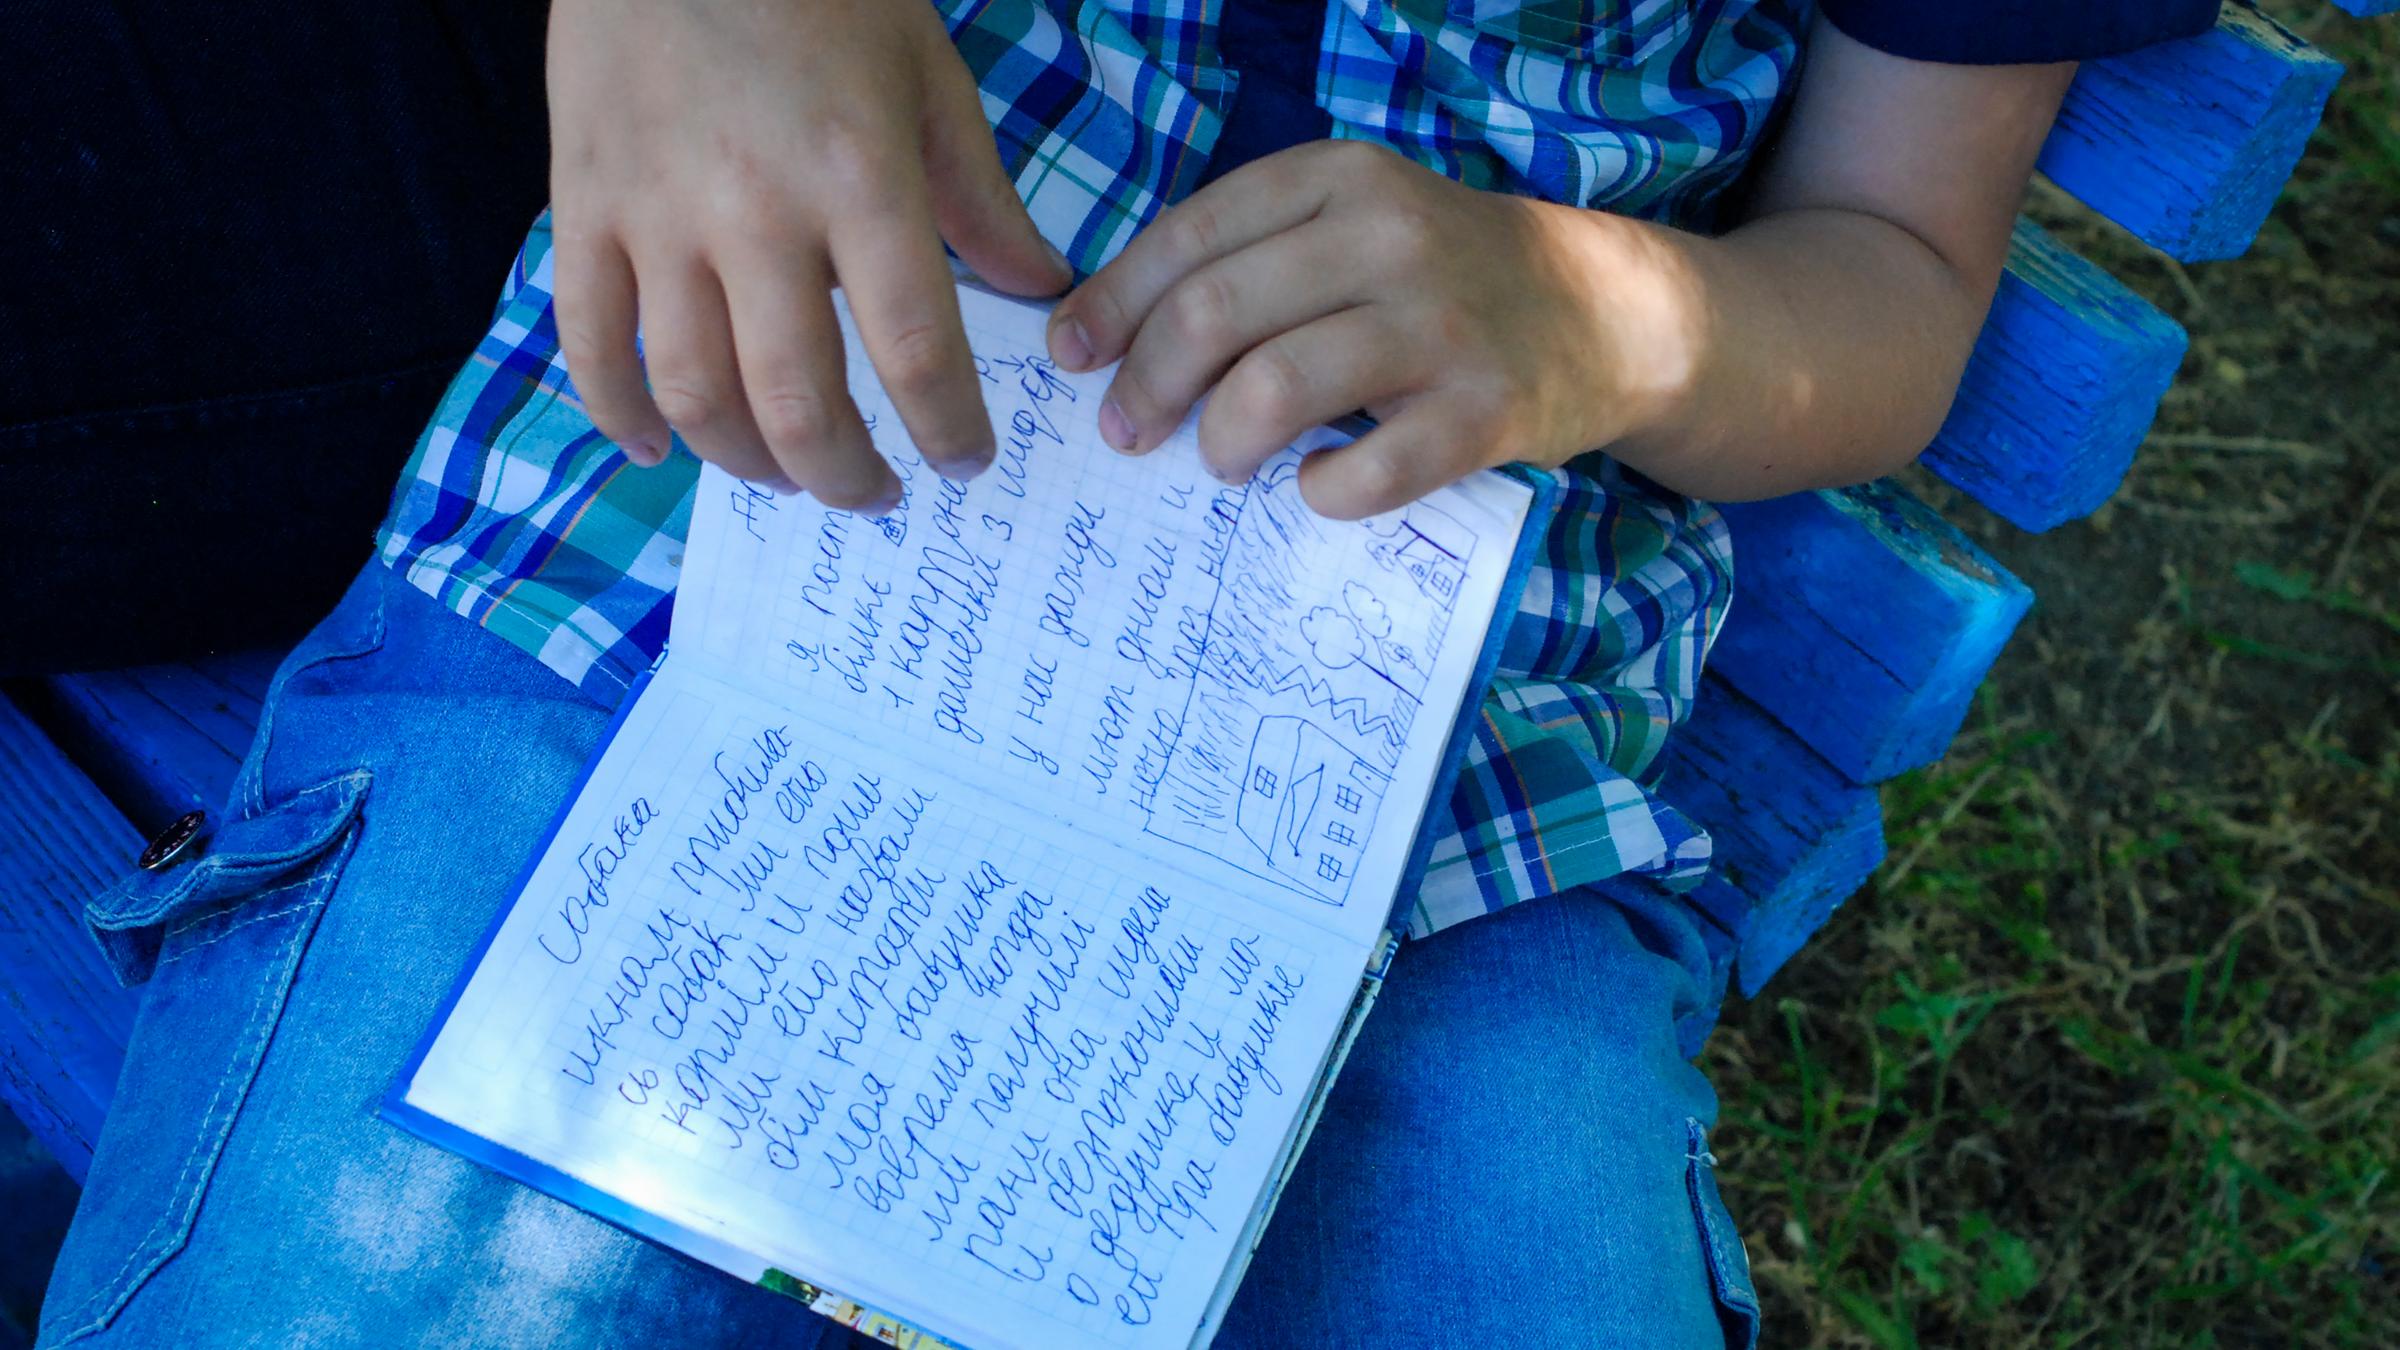 Der 8-Jährige Egor hält ein kleines blaues Buch in seiner Hand. Er hat in Mariupol Tagebuch geführt, als die Stadt blutig umkämpft war. Auf der aufgeschlagenen Seite steht neben einer kleinen Zeichnung: "Ich habe gut geschlafen, habe gelächelt und 25 Seiten gelesen. Ausserdem ist mein Grossvater gestorben am 26.April". Zaporizhzhia, 3.Juni 2022.